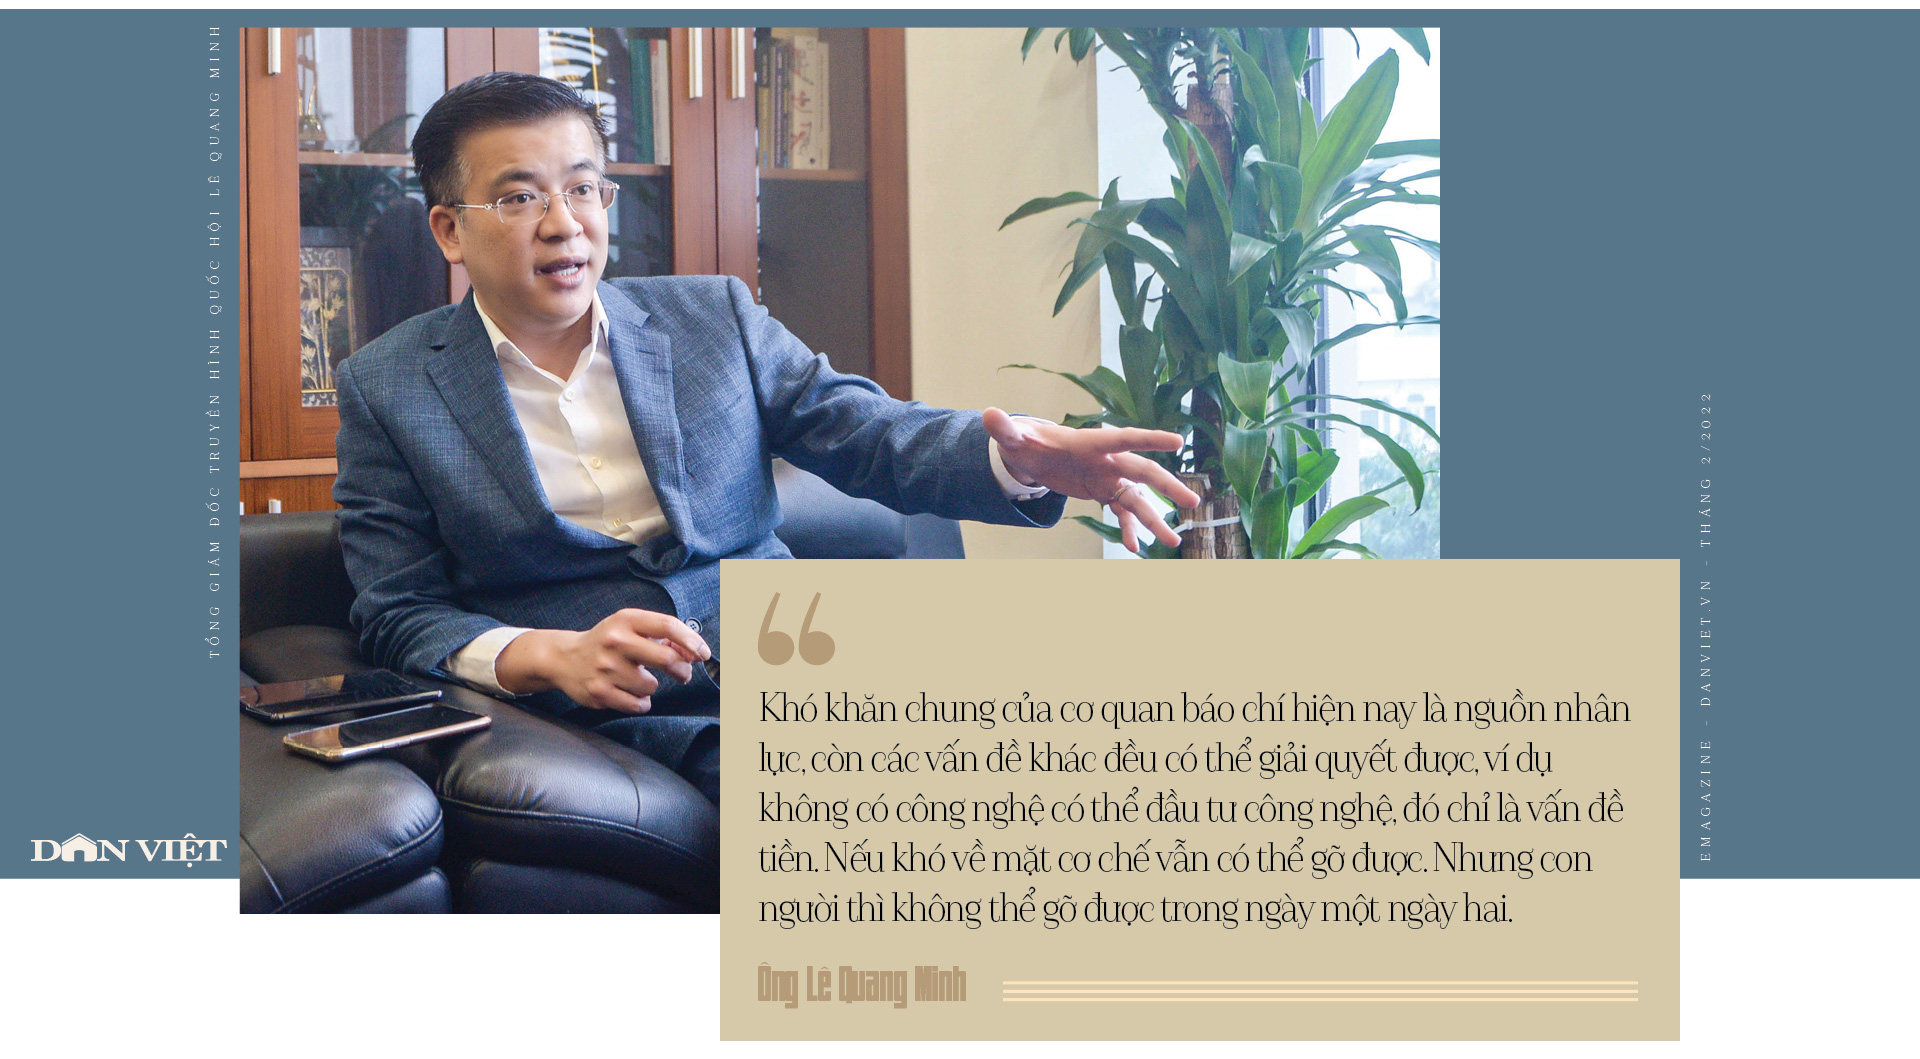 Tổng giám đốc kênh Truyền hình Quốc hội Lê Quang Minh: ‘Tôi muốn đưa câu chuyện chính luận gần gũi với đời sống’ - Ảnh 12.